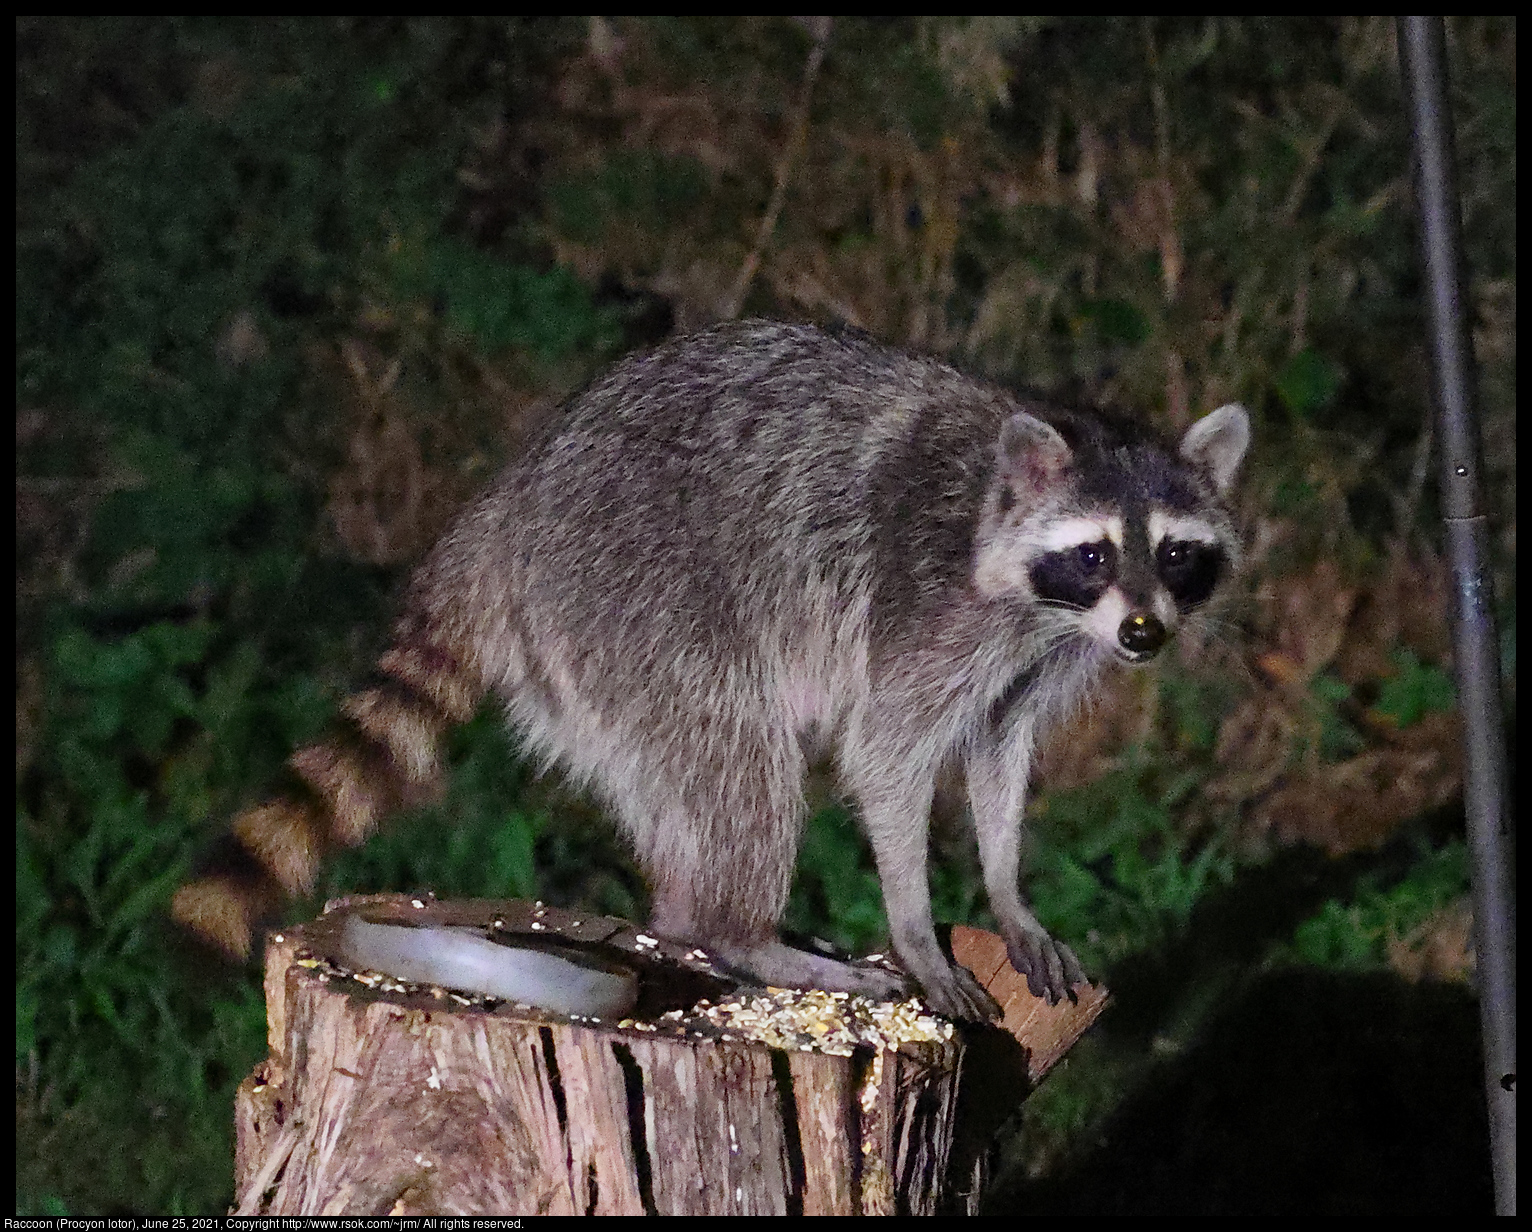 Raccoon (Procyon lotor), June 25, 2021